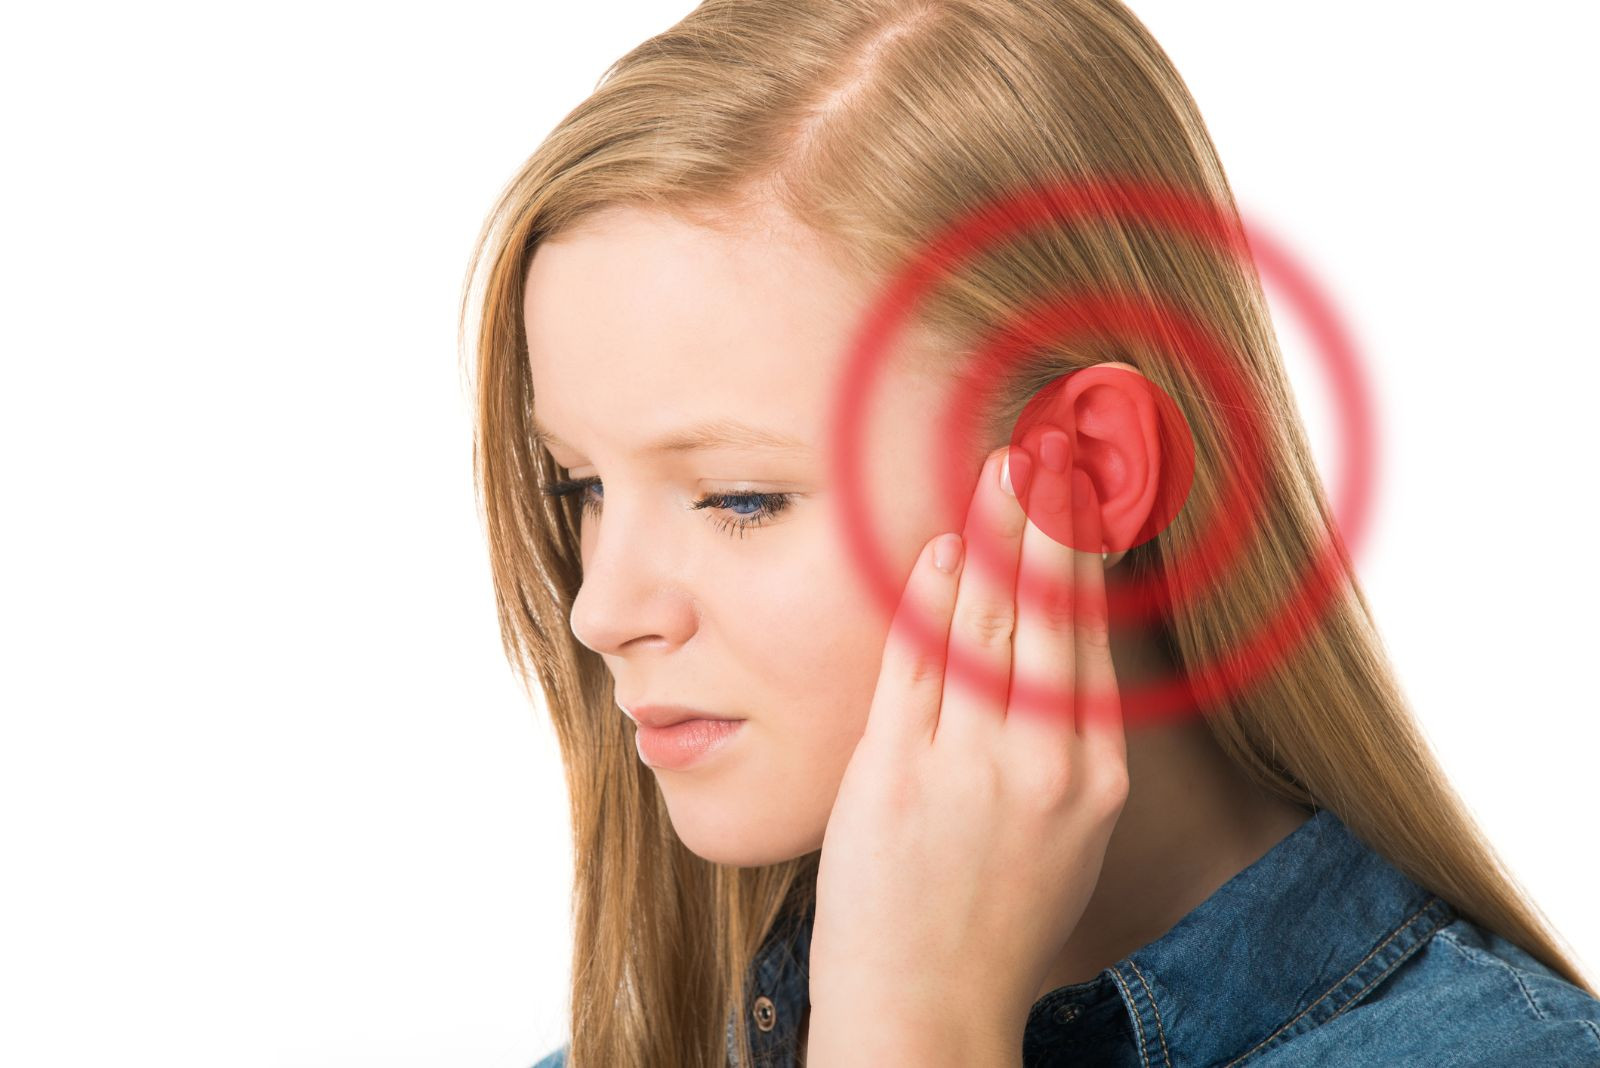 Vì sao lại có hiện tượng đau tai khi đi máy bay?